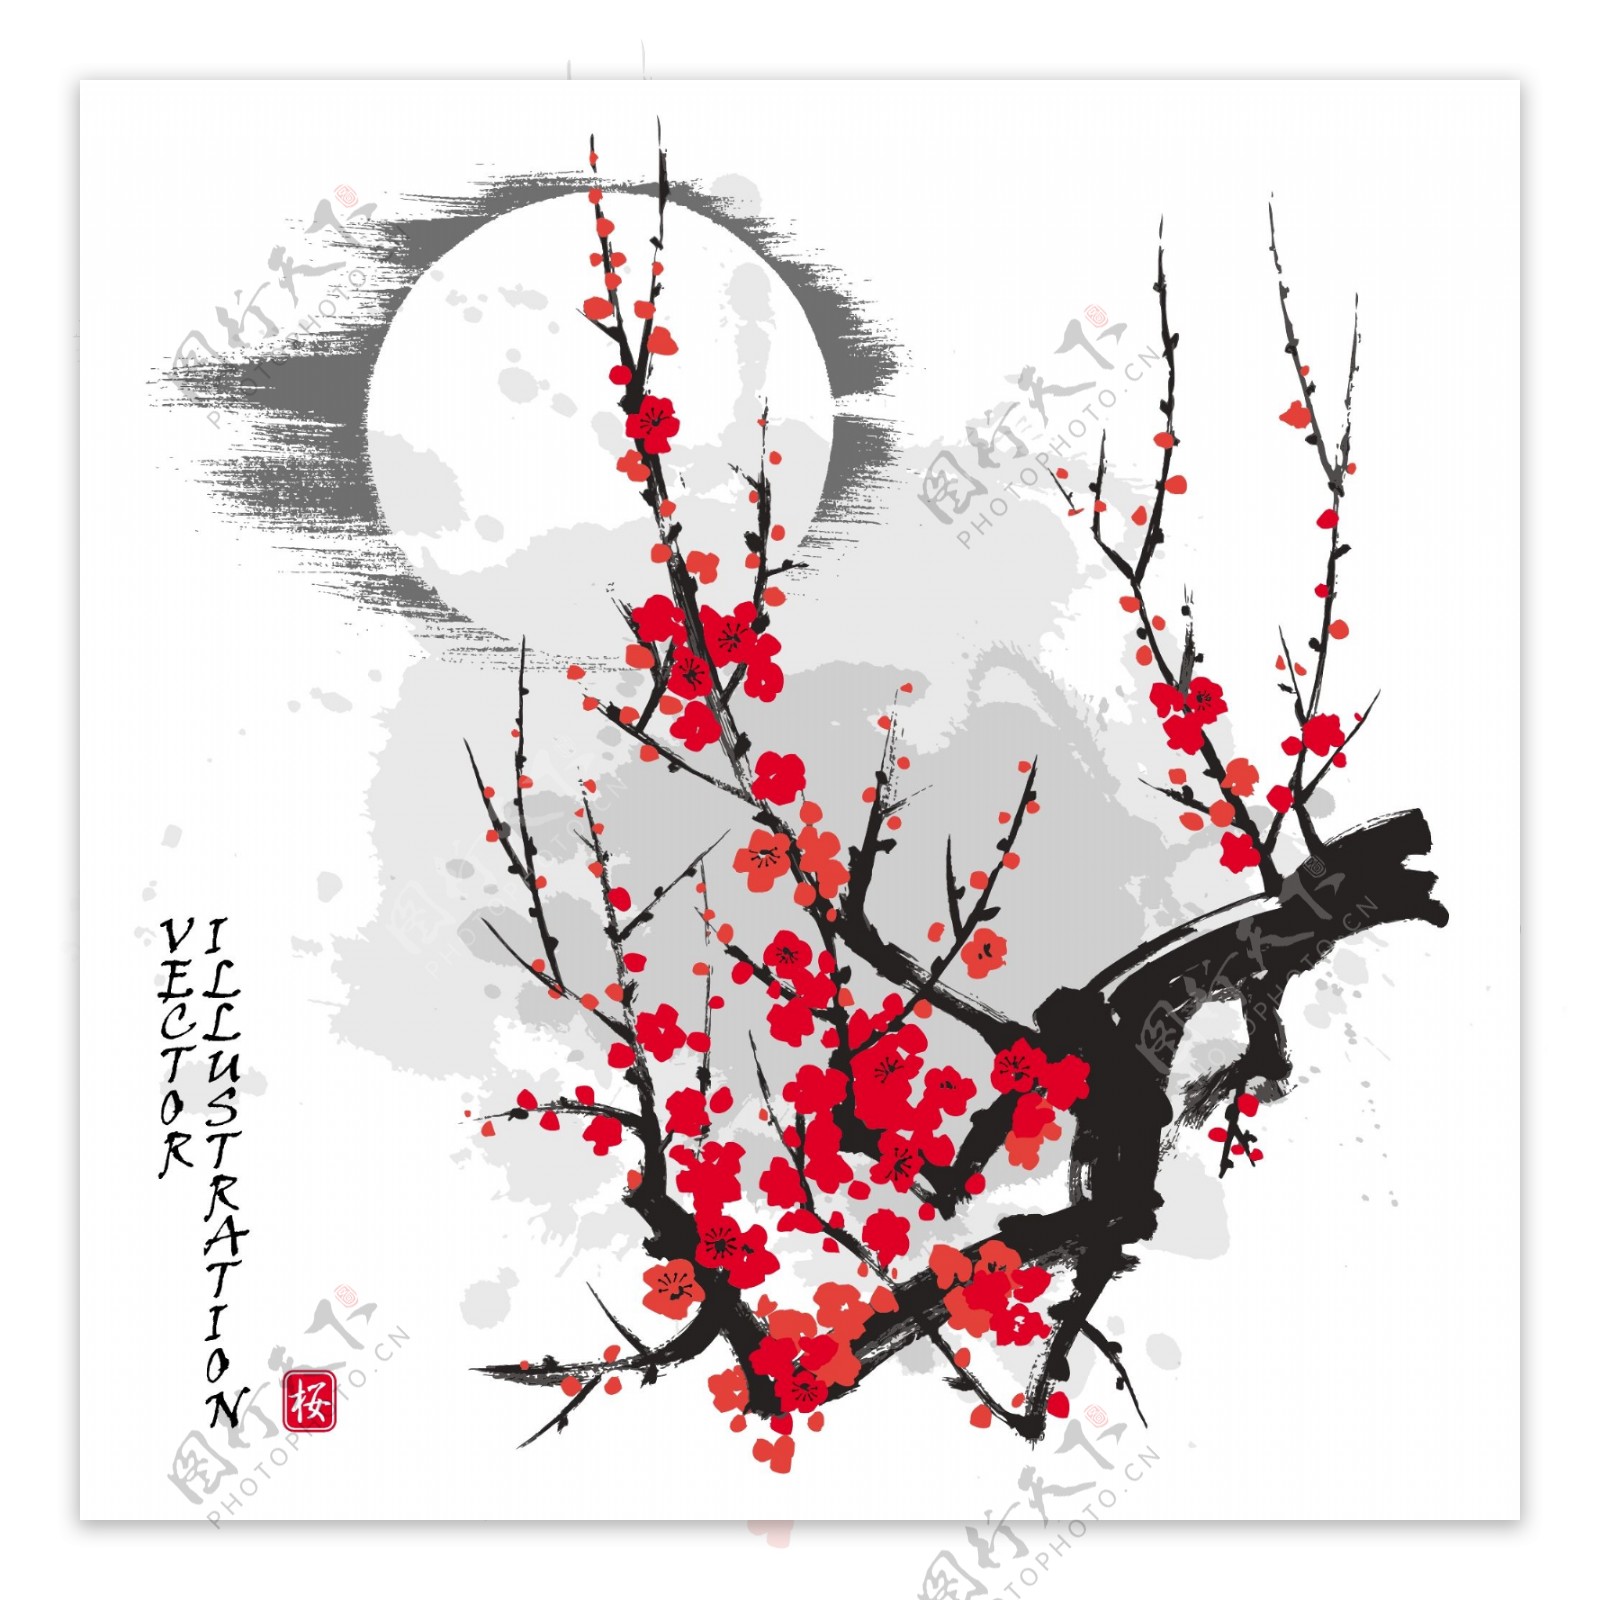 中国风传统水墨风景画